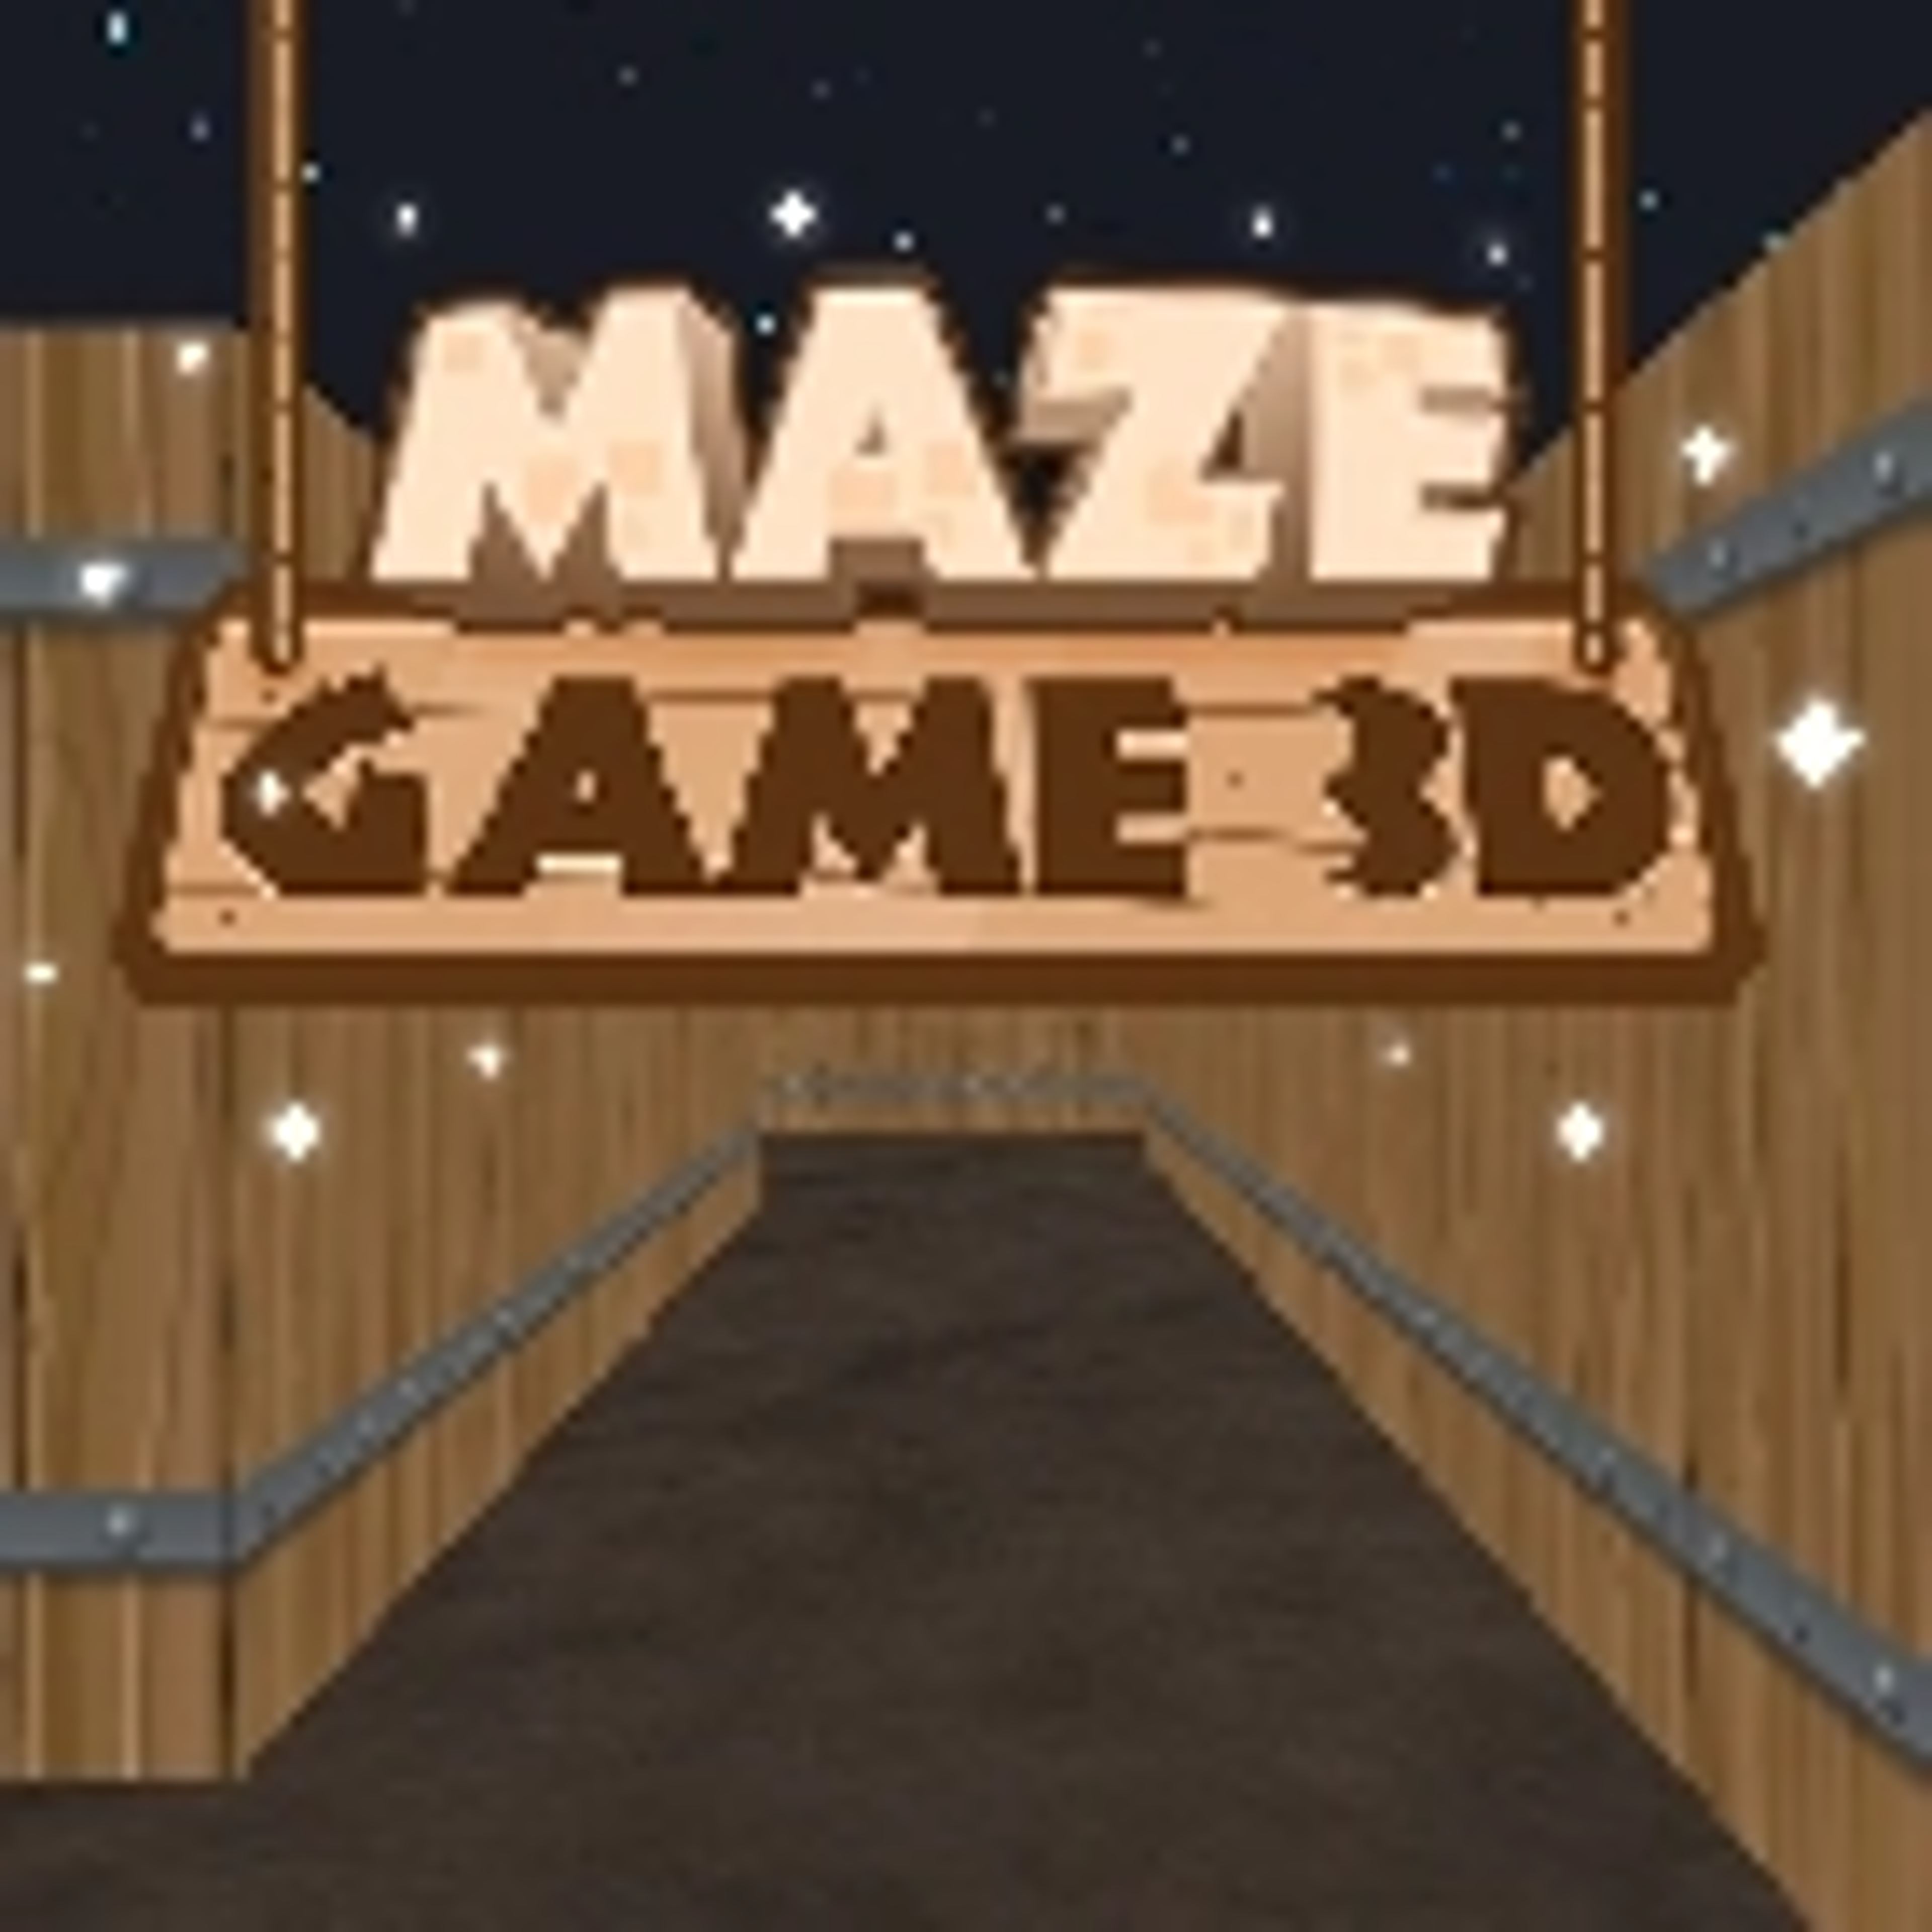 Maze Game 3D